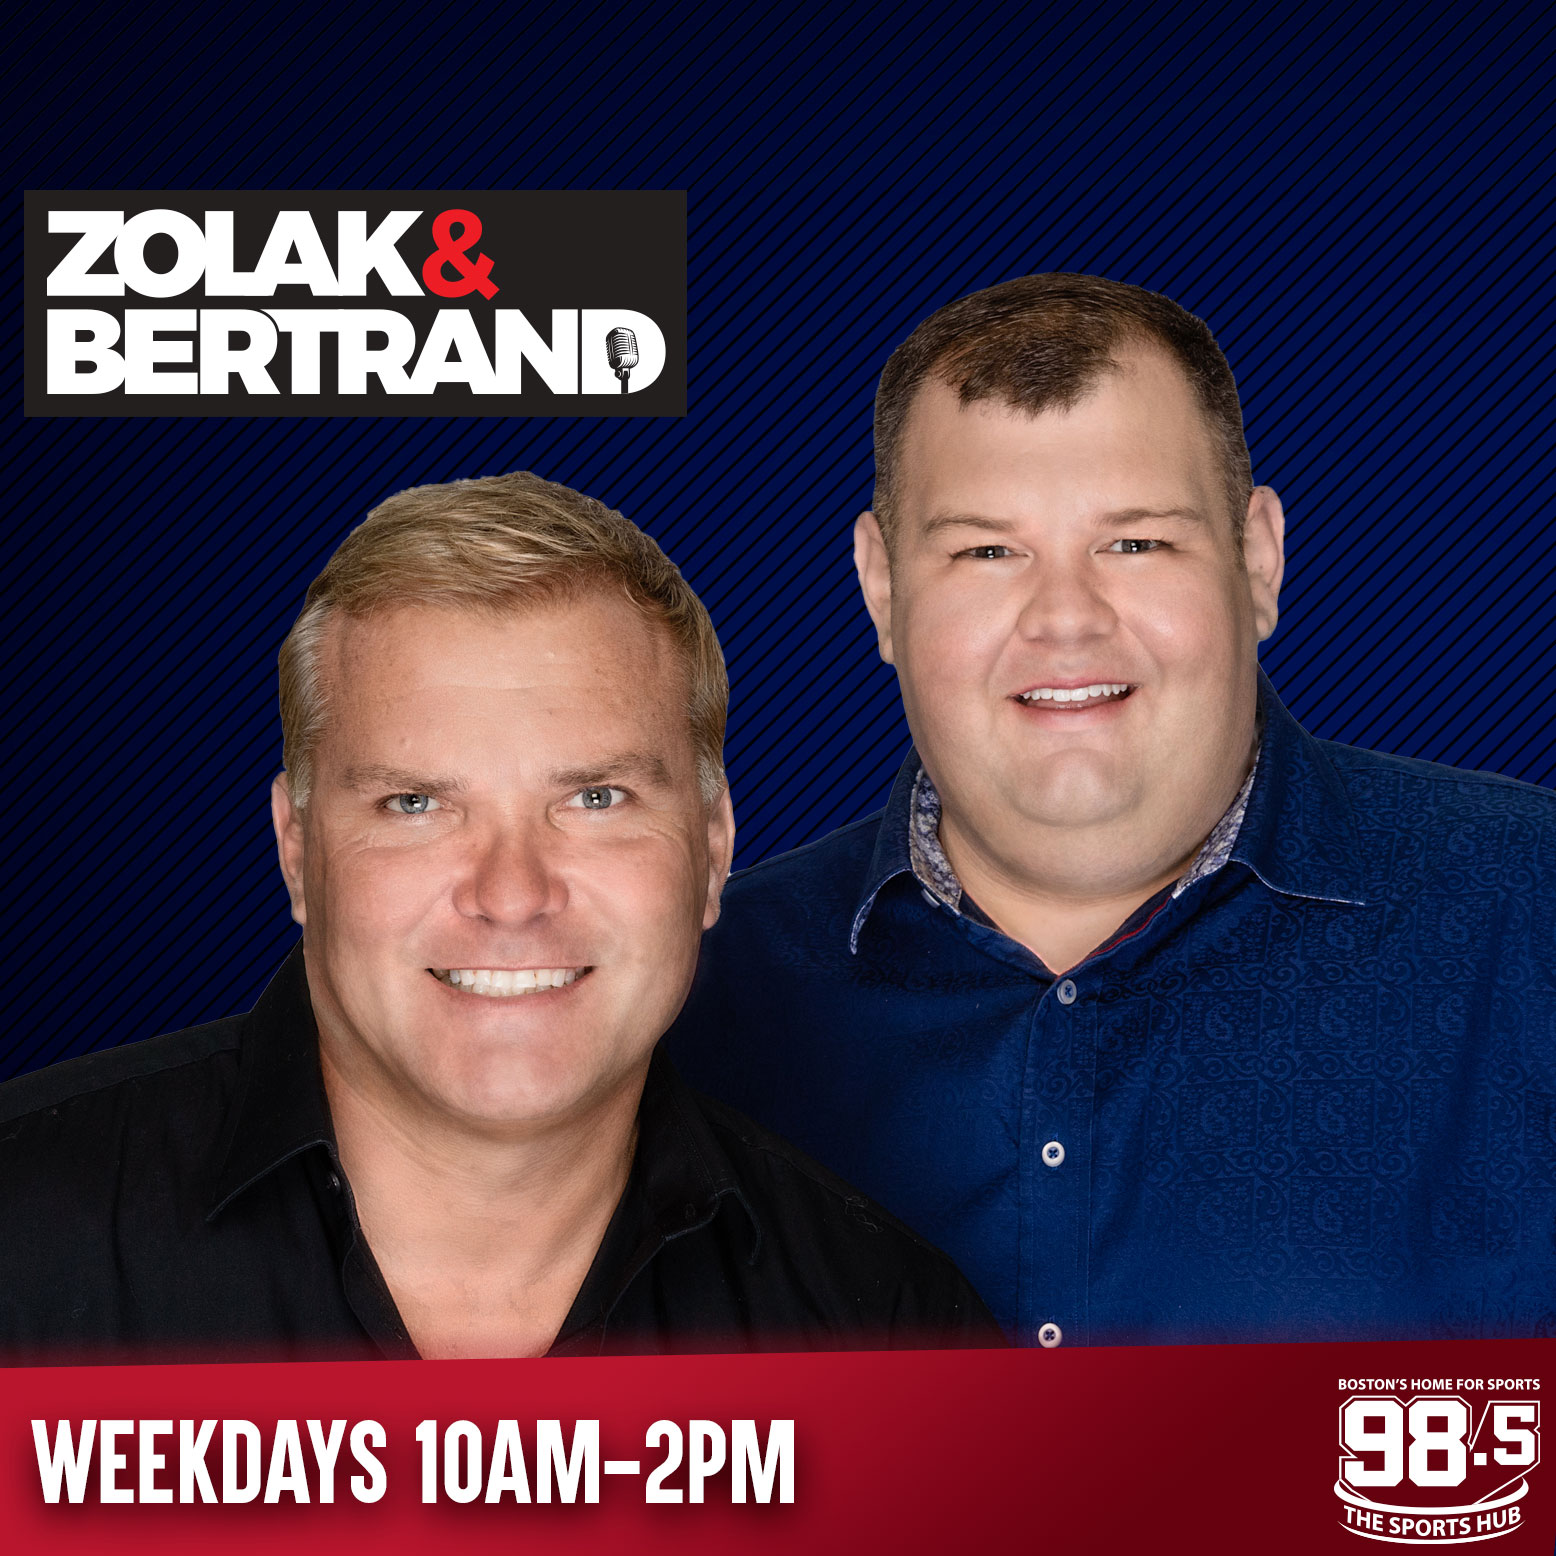 Zolak & Bertrand: Details emerge about "Brady Night"